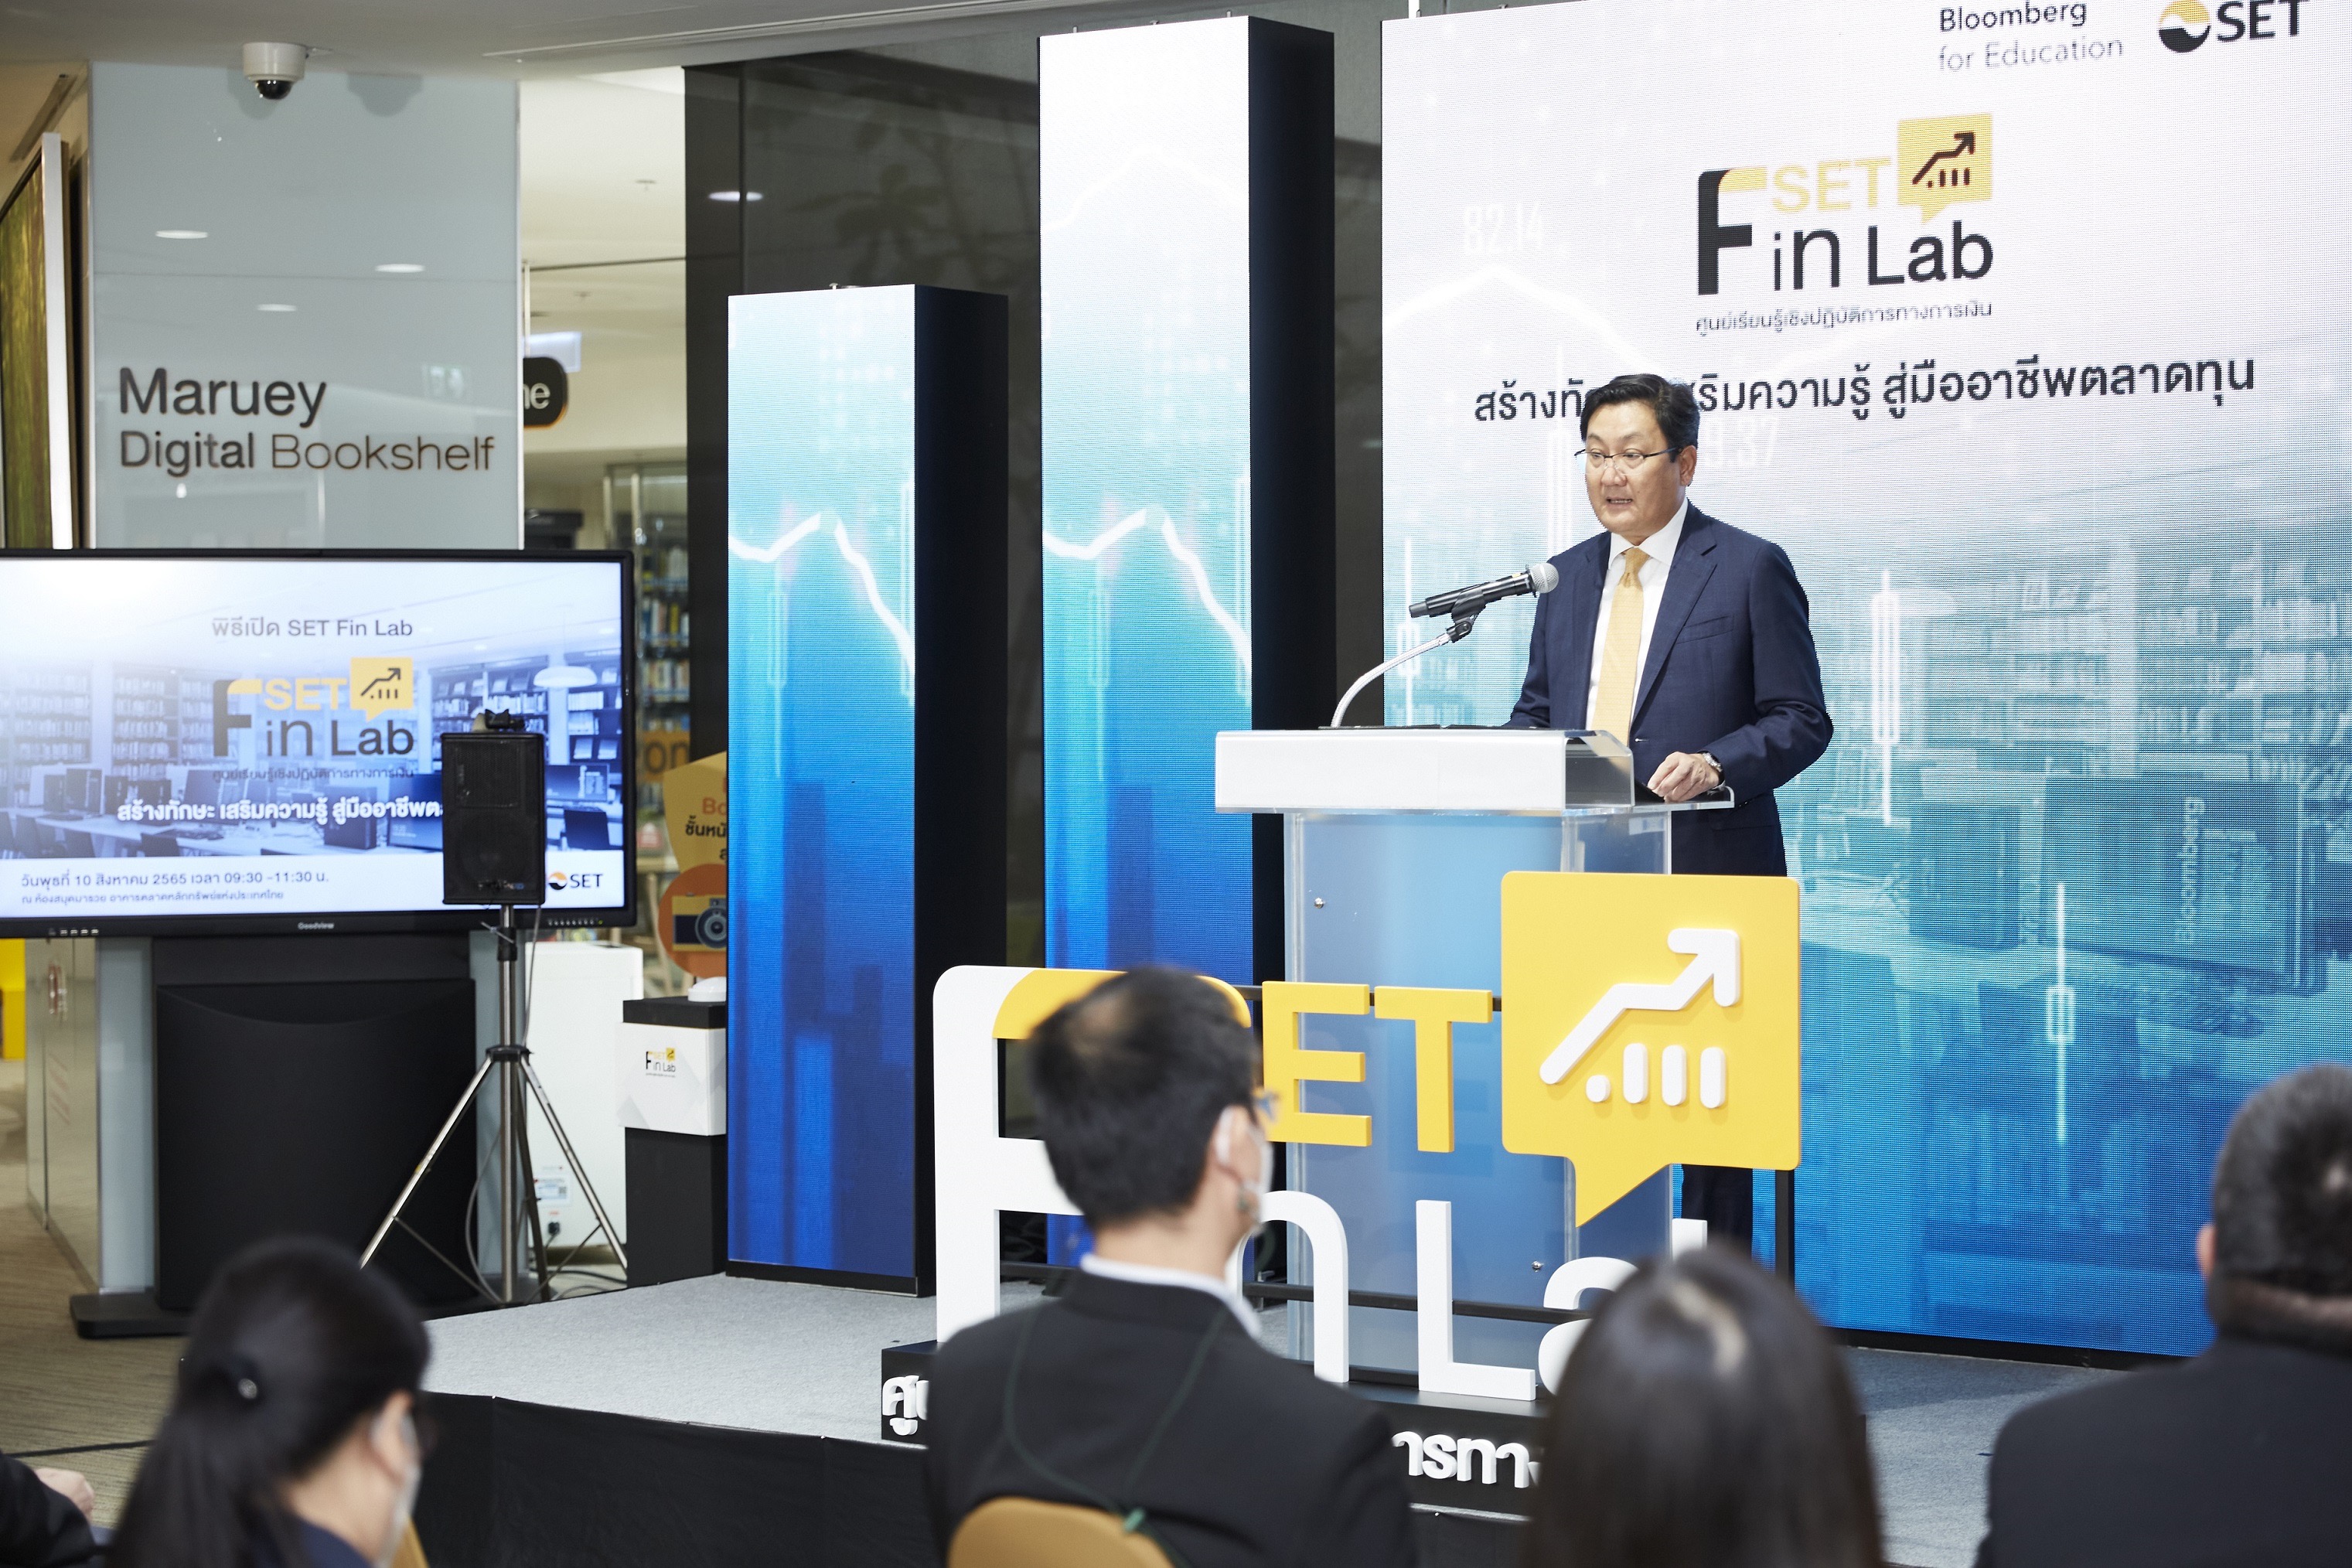 ตลท.จับมือ Bloomberg ตั้งศูนย์เรียนรู้เชิงปฏิบัติการทางการเงิน “SET Fin Lab” สร้างทรัพยากรบุคคลคุณภาพเพื่อตลาดทุนไทย